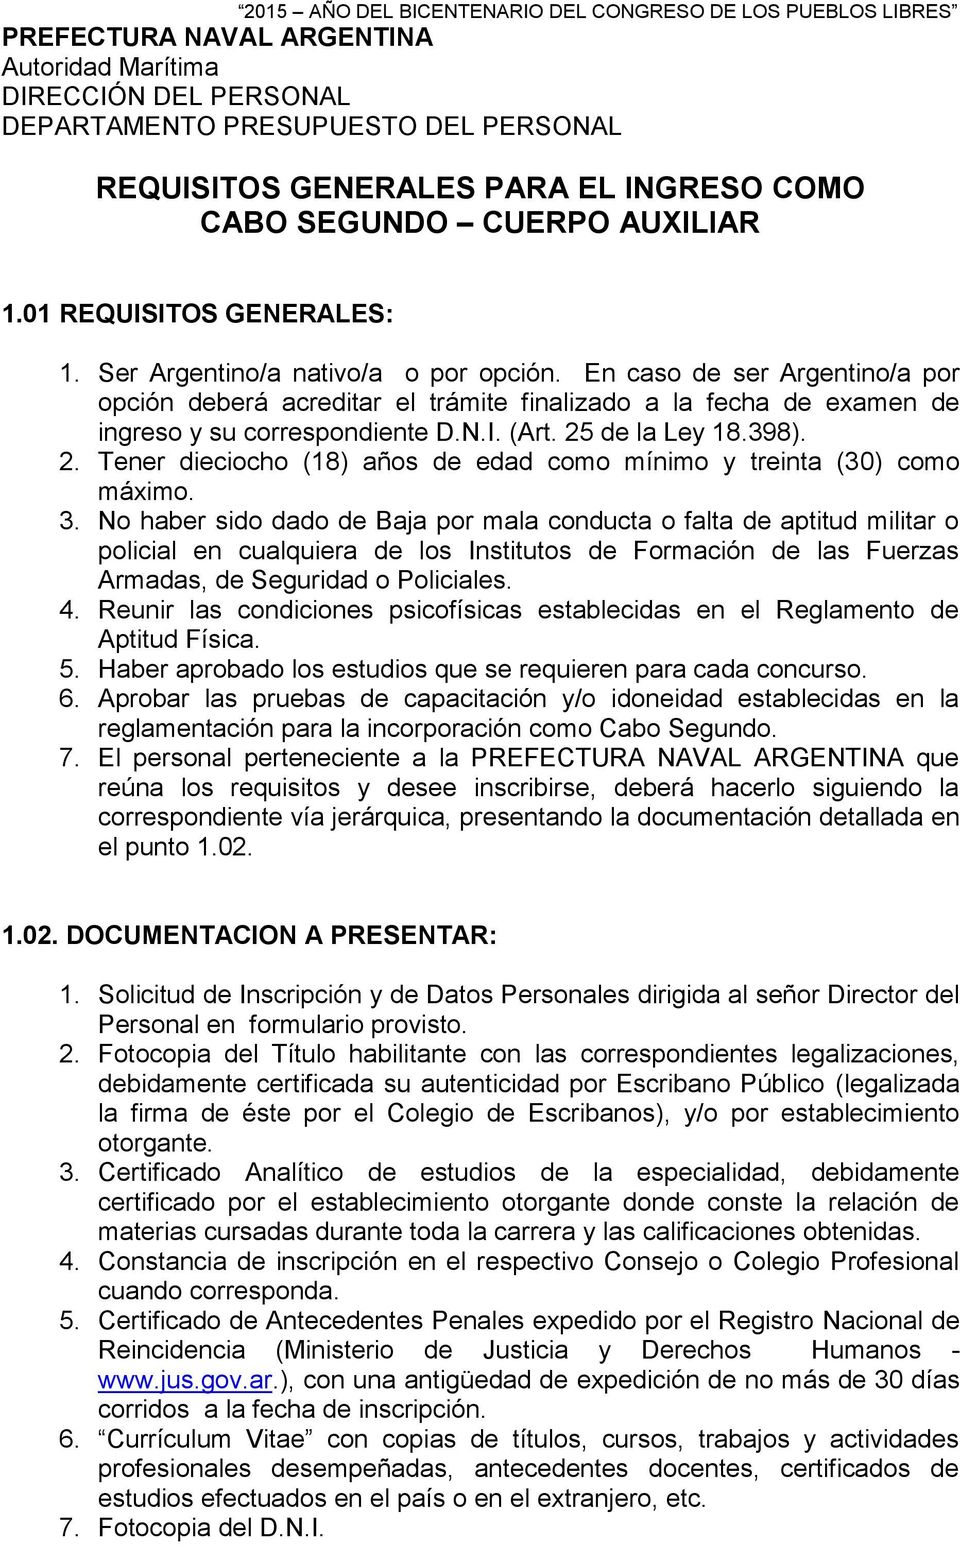 En caso de ser Argentino/a por opción deberá acreditar el trámite finalizado a la fecha de examen de ingreso y su correspondiente D.N.I. (Art. 25